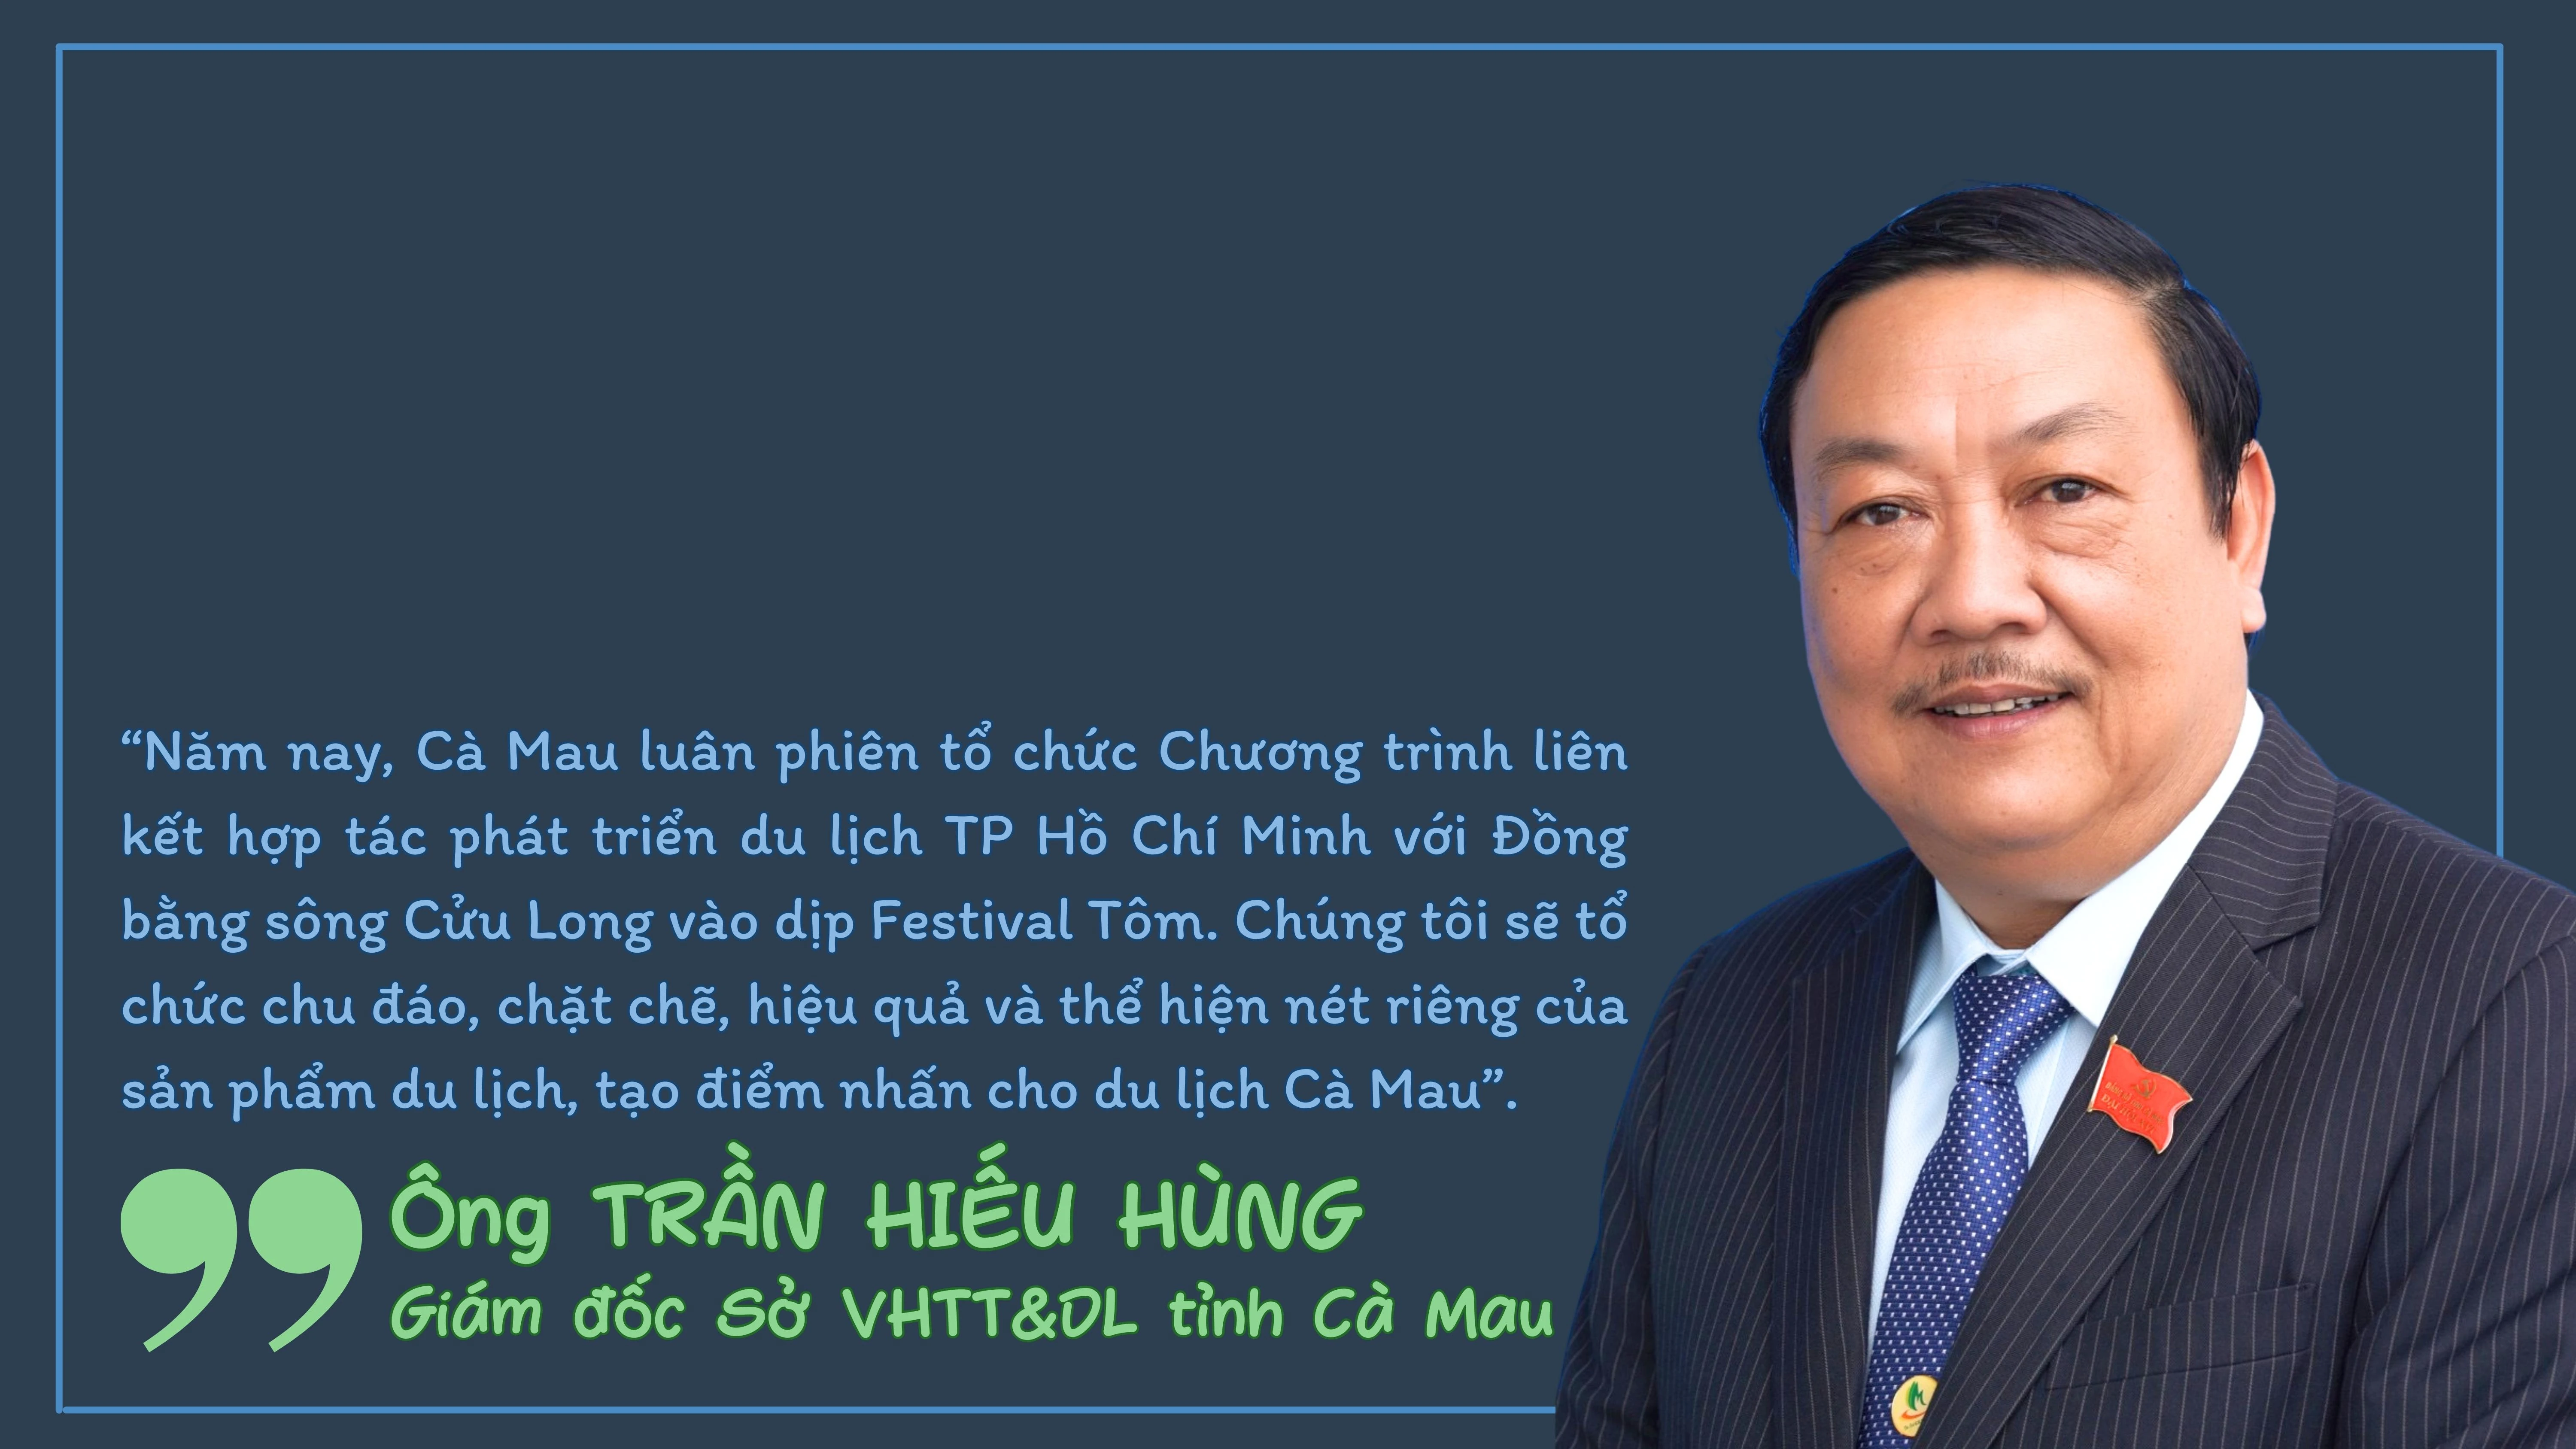 Festival Tôm Cà Mau 2023 - Tự hào hương vị Việt